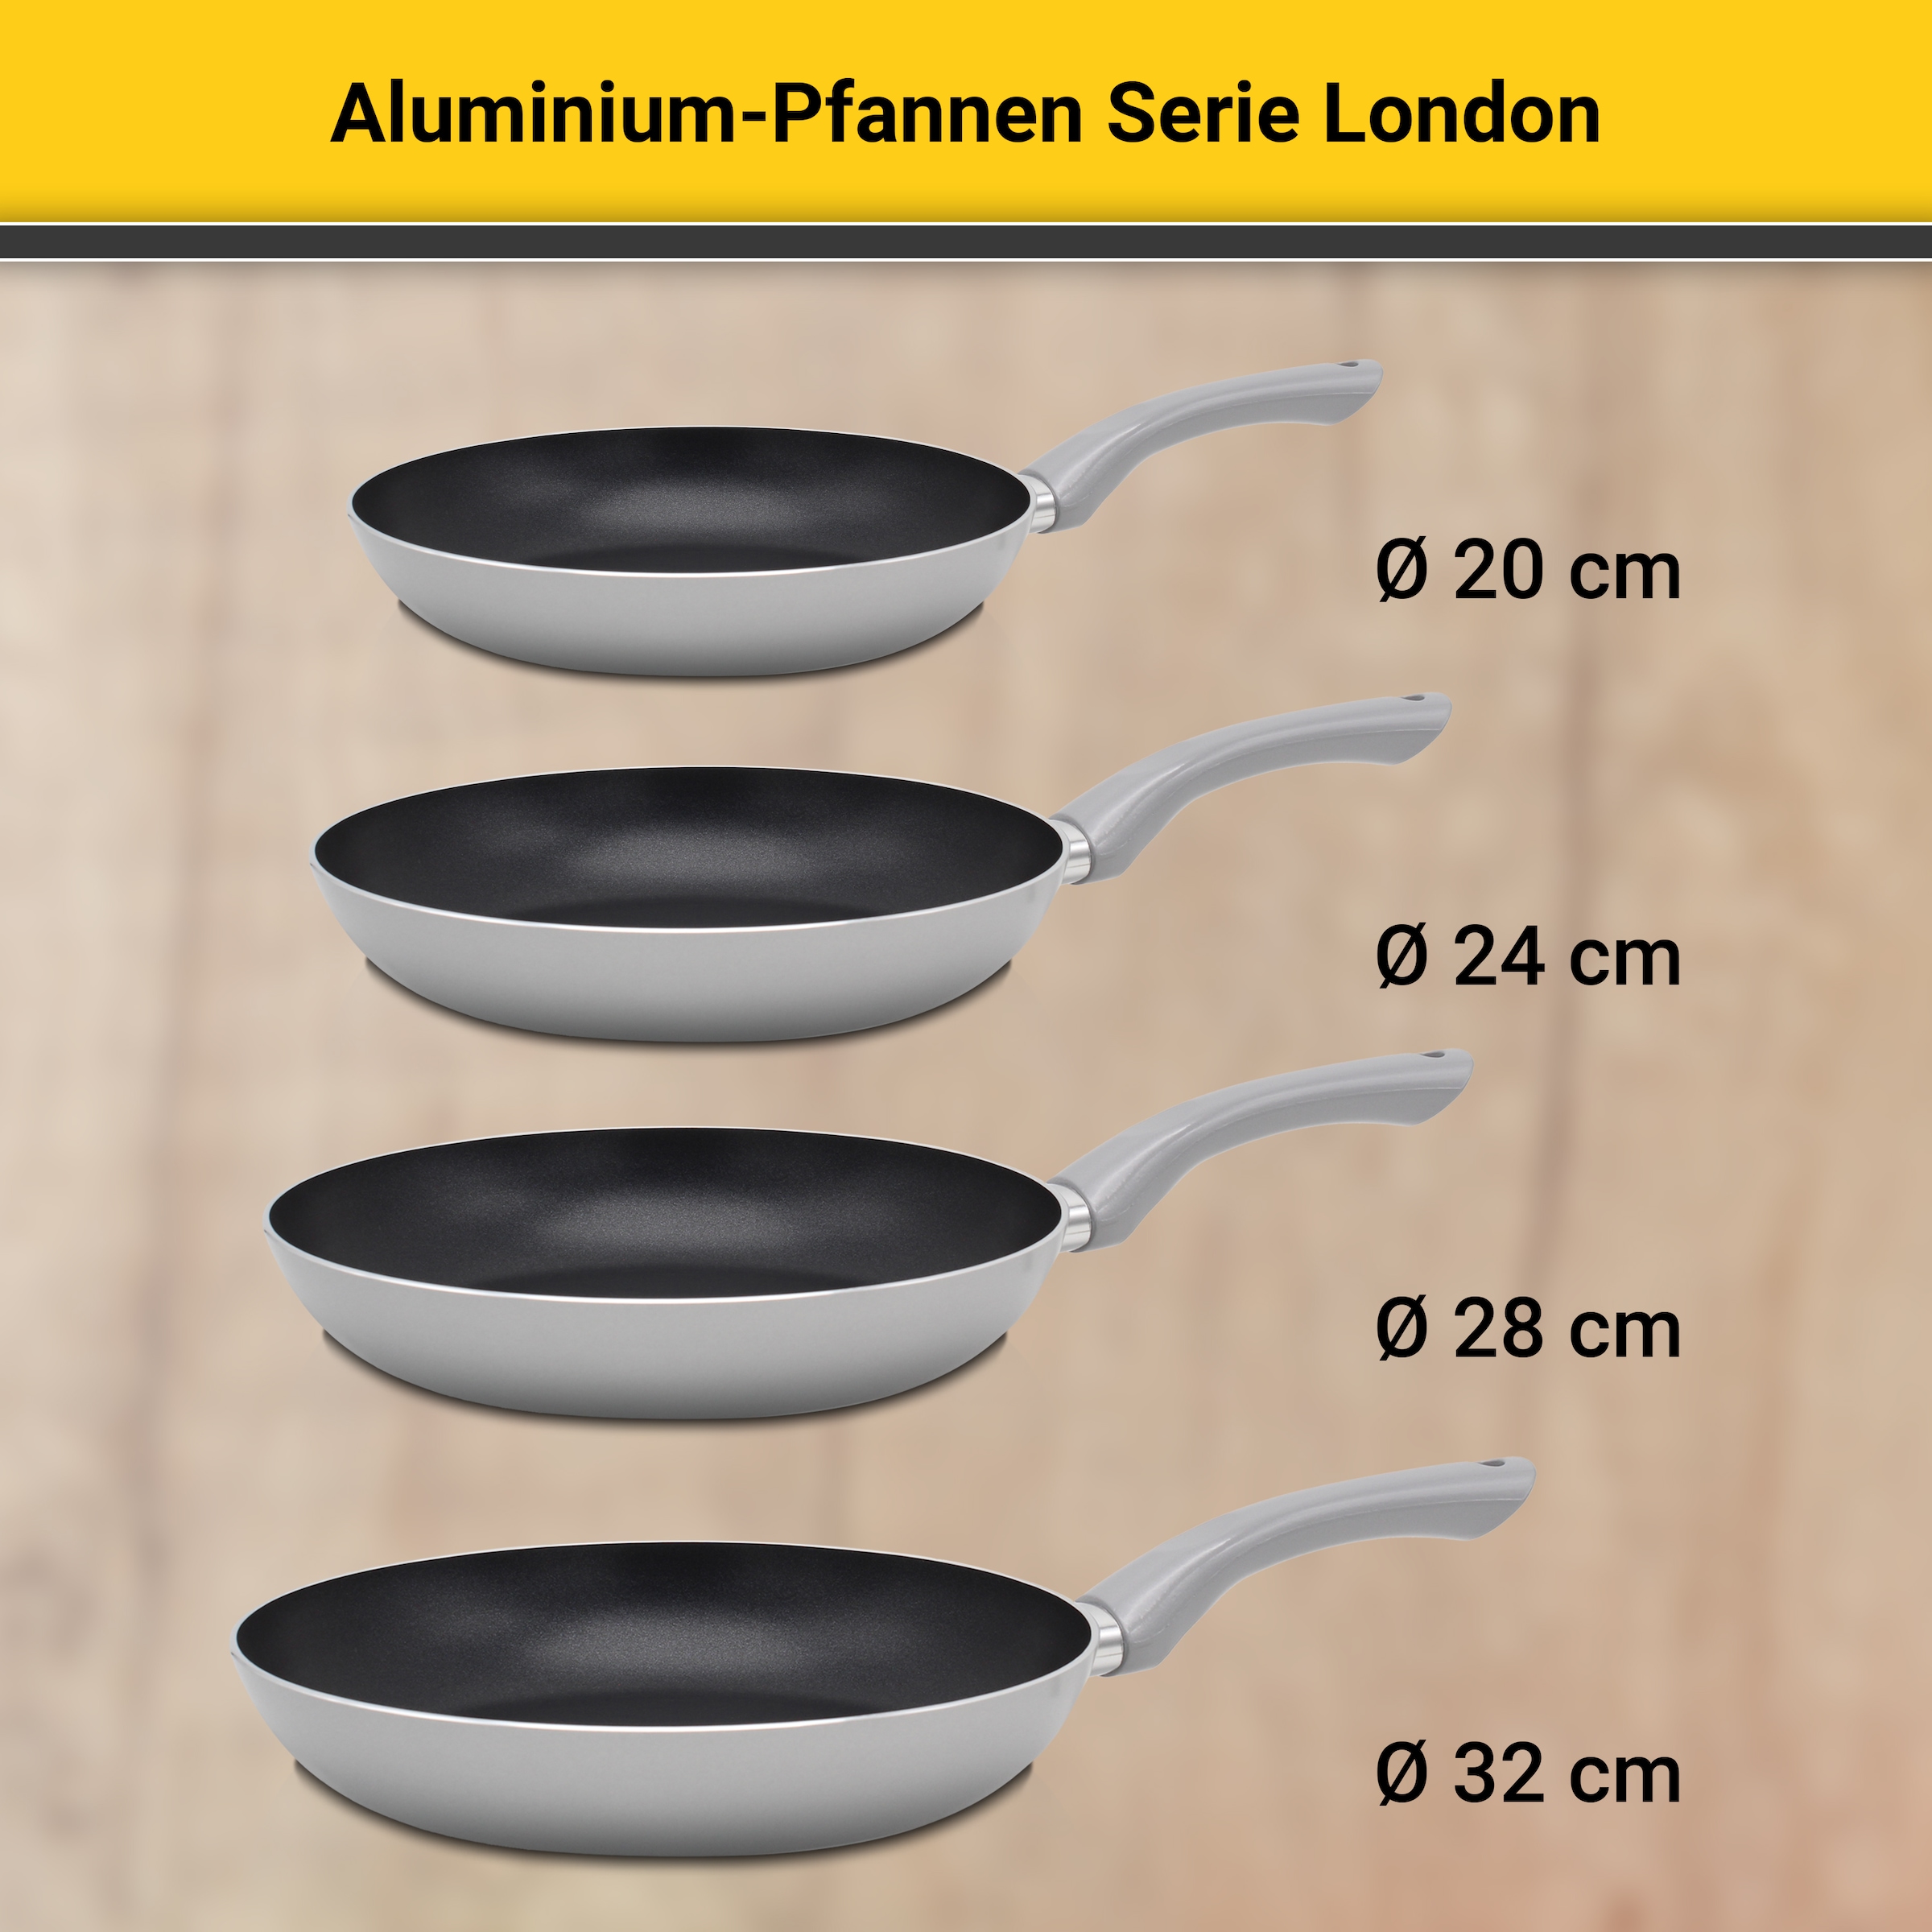 Krüger Pfannen-Set »Aluminium Pfannenset London, 3 tlg.«, Aluminium, (Set, 3 tlg., je 1 Bratpfanne Ø 20 / 28 cm, 1 Pfannenwender), für Induktions-Kochfelder geeignet